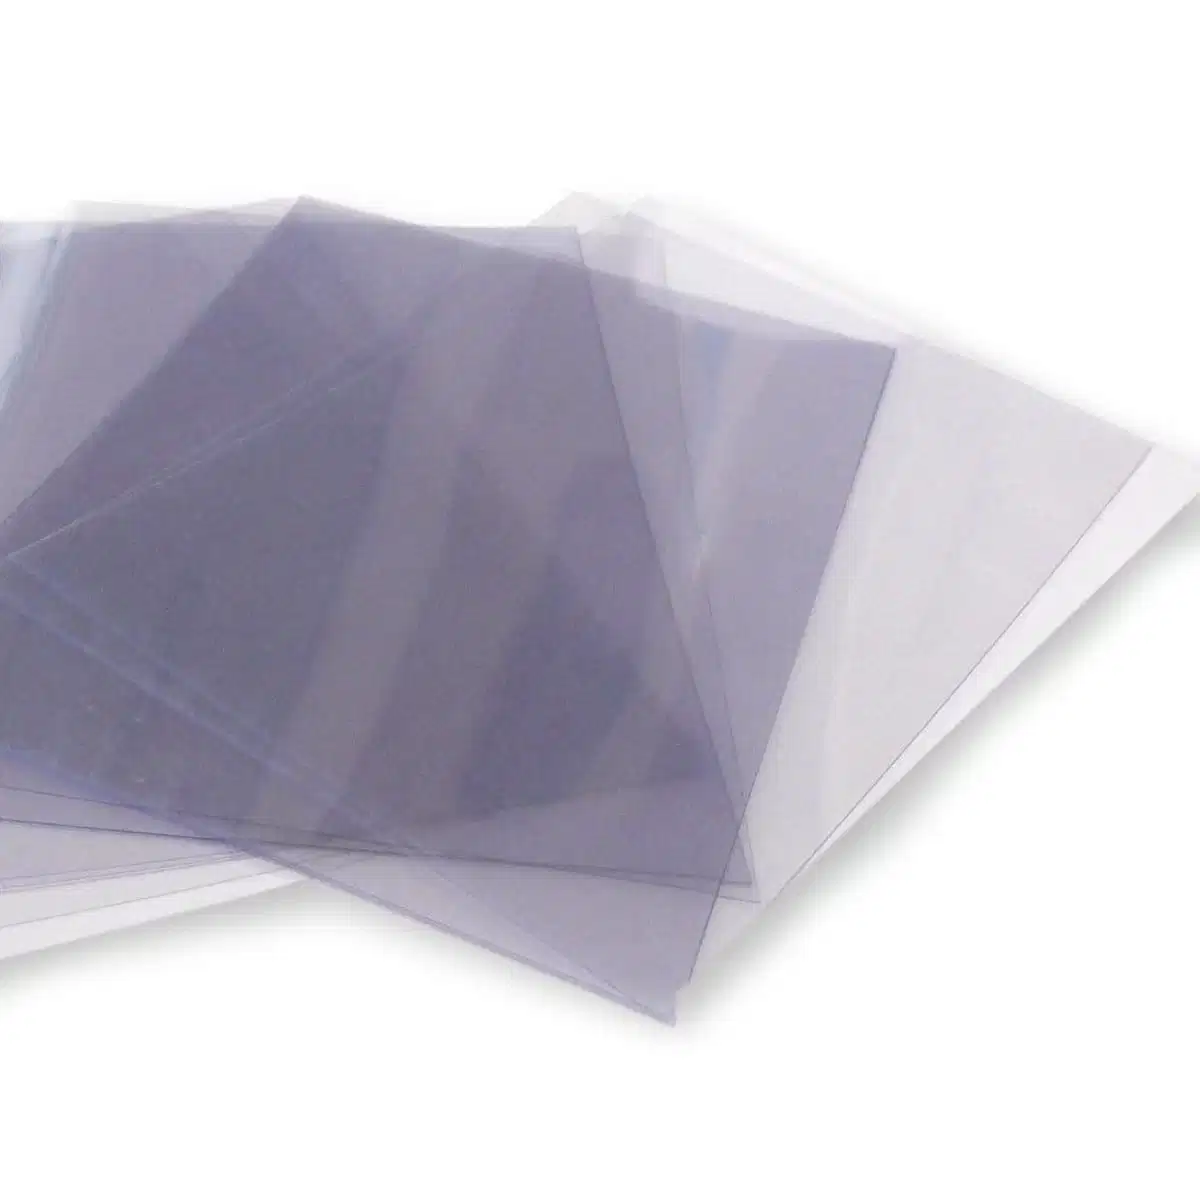 Feuille transparente en PVC, plastique rigide et transparent haute définition